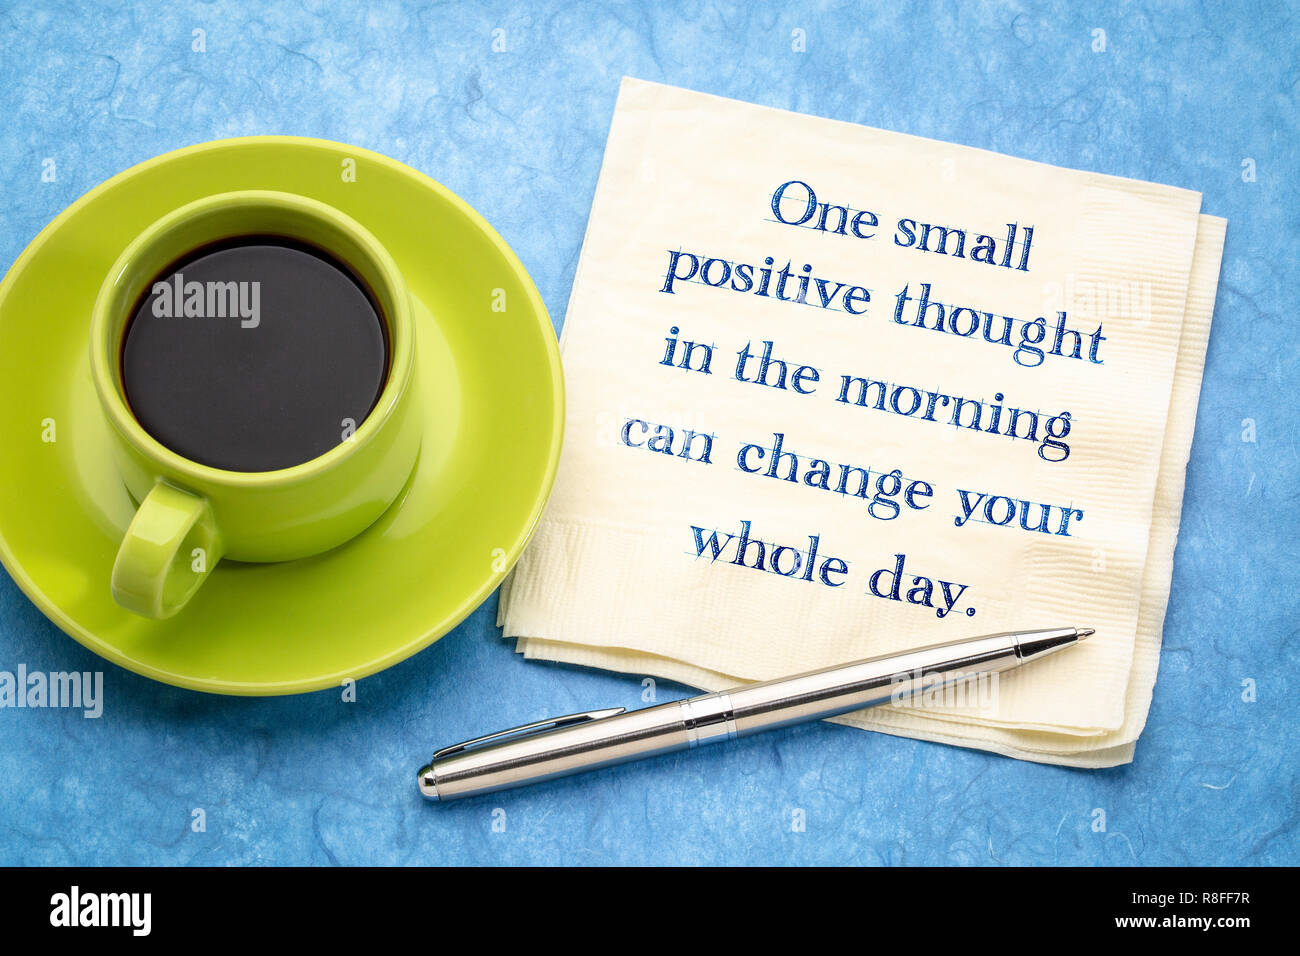 Eine kleine positive Gedanken am Morgen können Sie den ganzen Tag - inspirational Handschrift auf eine Serviette mit einer Tasse Kaffee Stockfoto